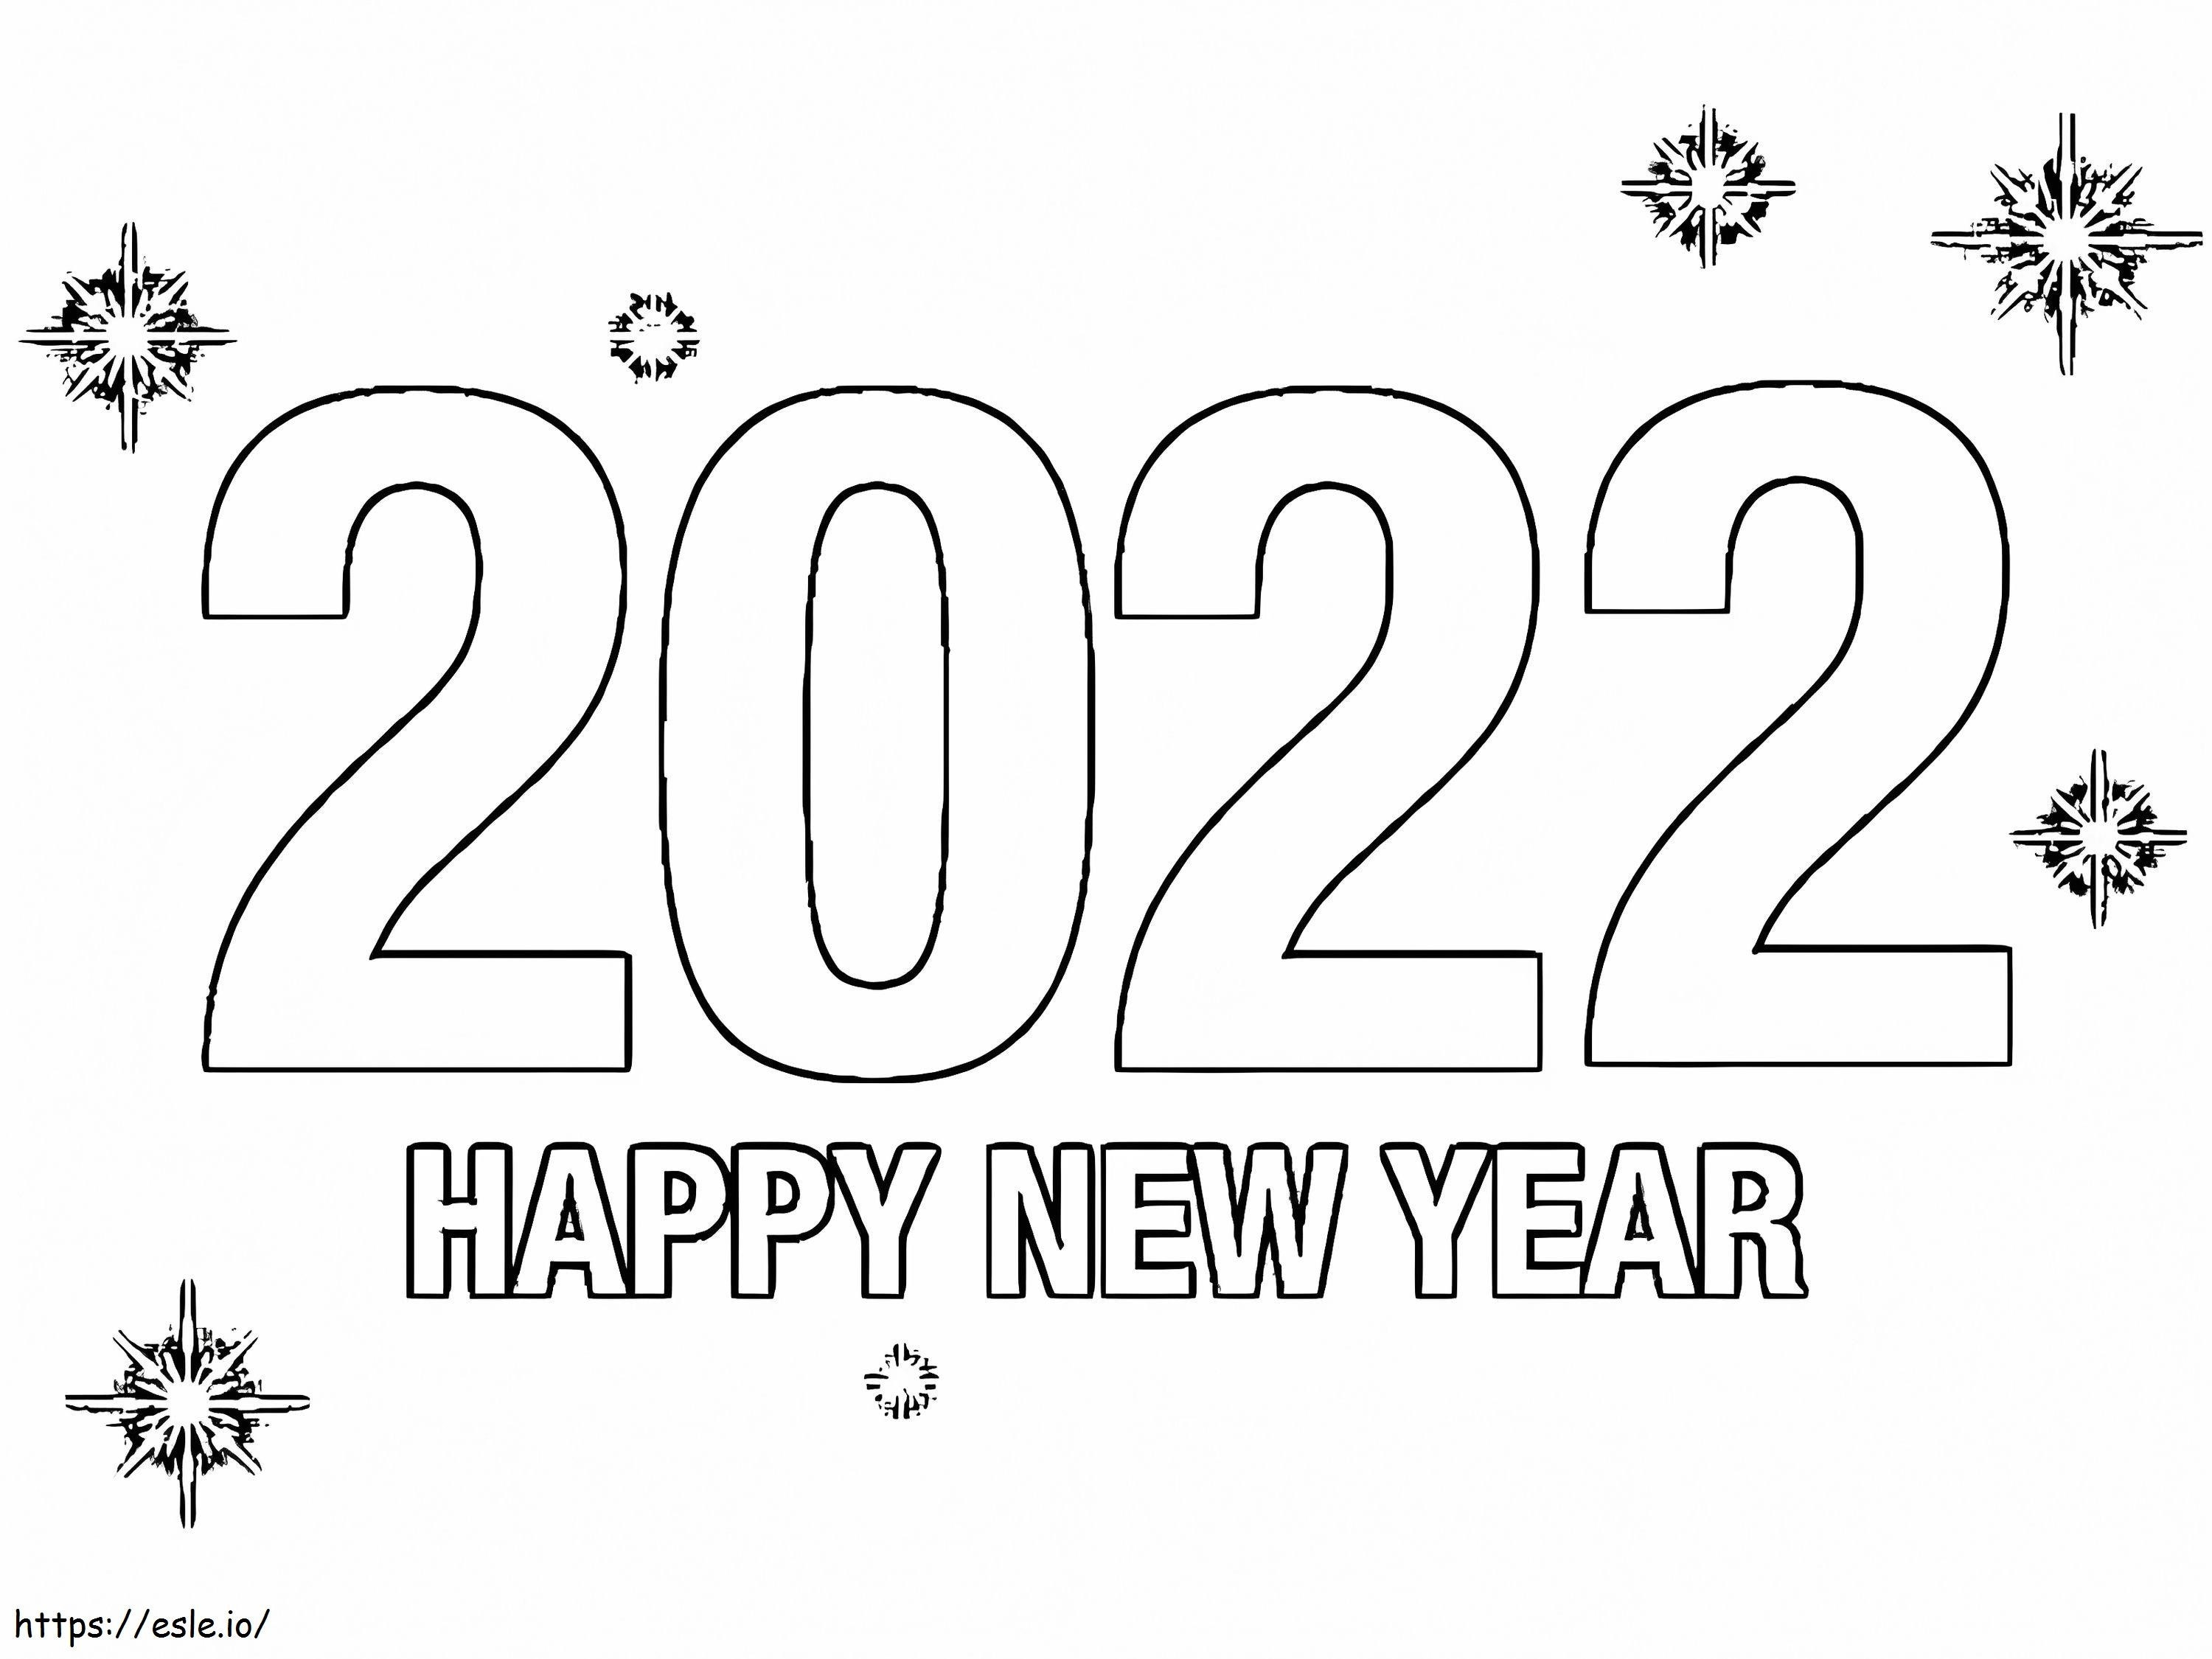 Felice Anno Nuovo 2022 da colorare